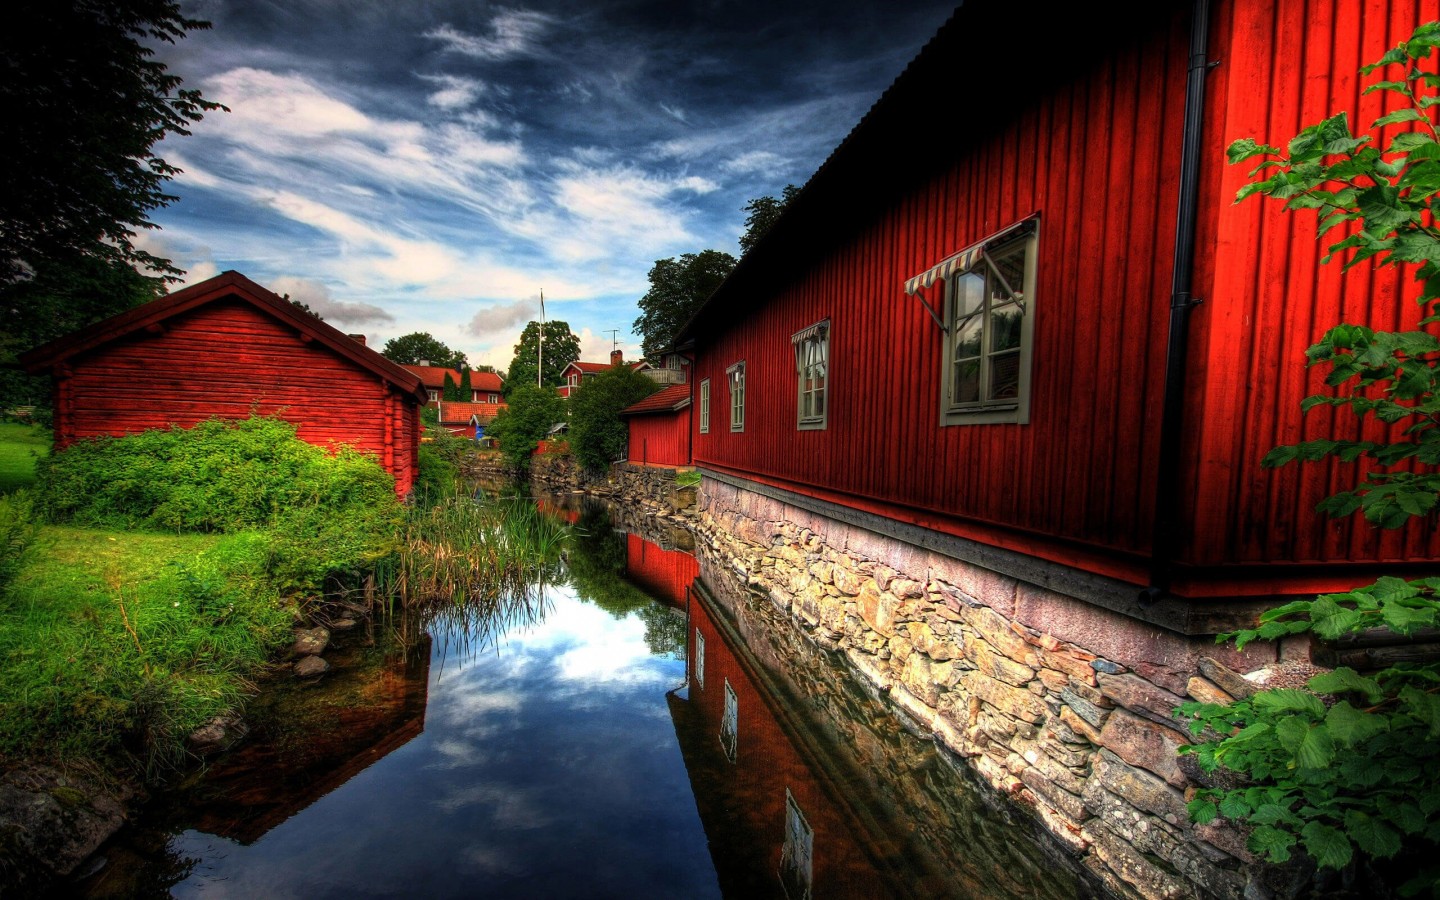 Red Village, Norberg, Sweden Wallpaper for Desktop 1440x900